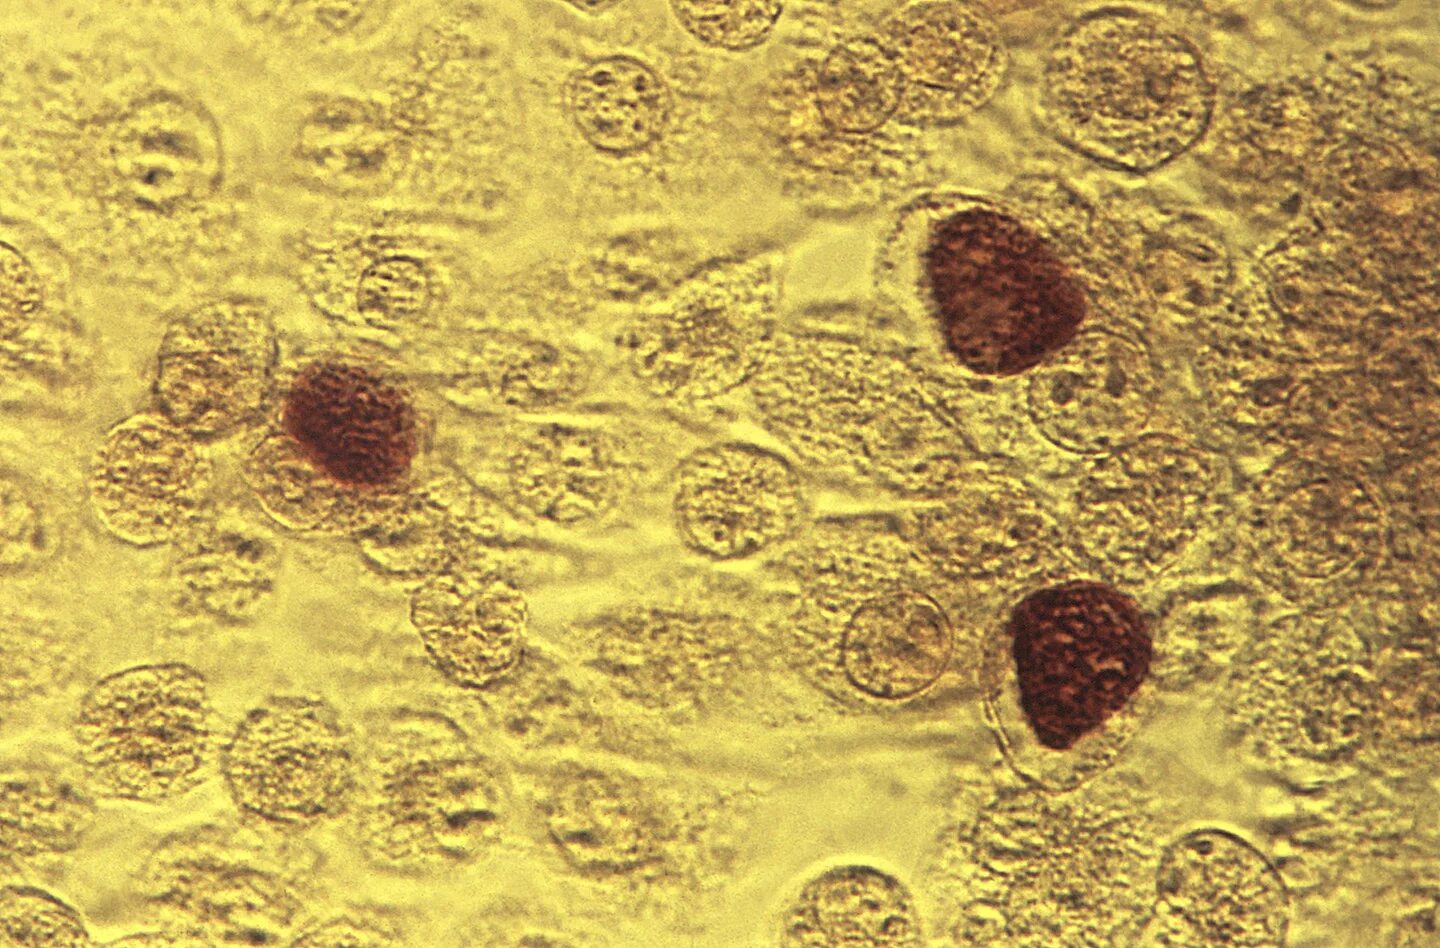 Хламидии возбудитель орнитоза\. Хламидия трахоматис под микроскопом. Хламидиоз трахоматис микроскоп. Венерическая лимфогранулема хламидии.